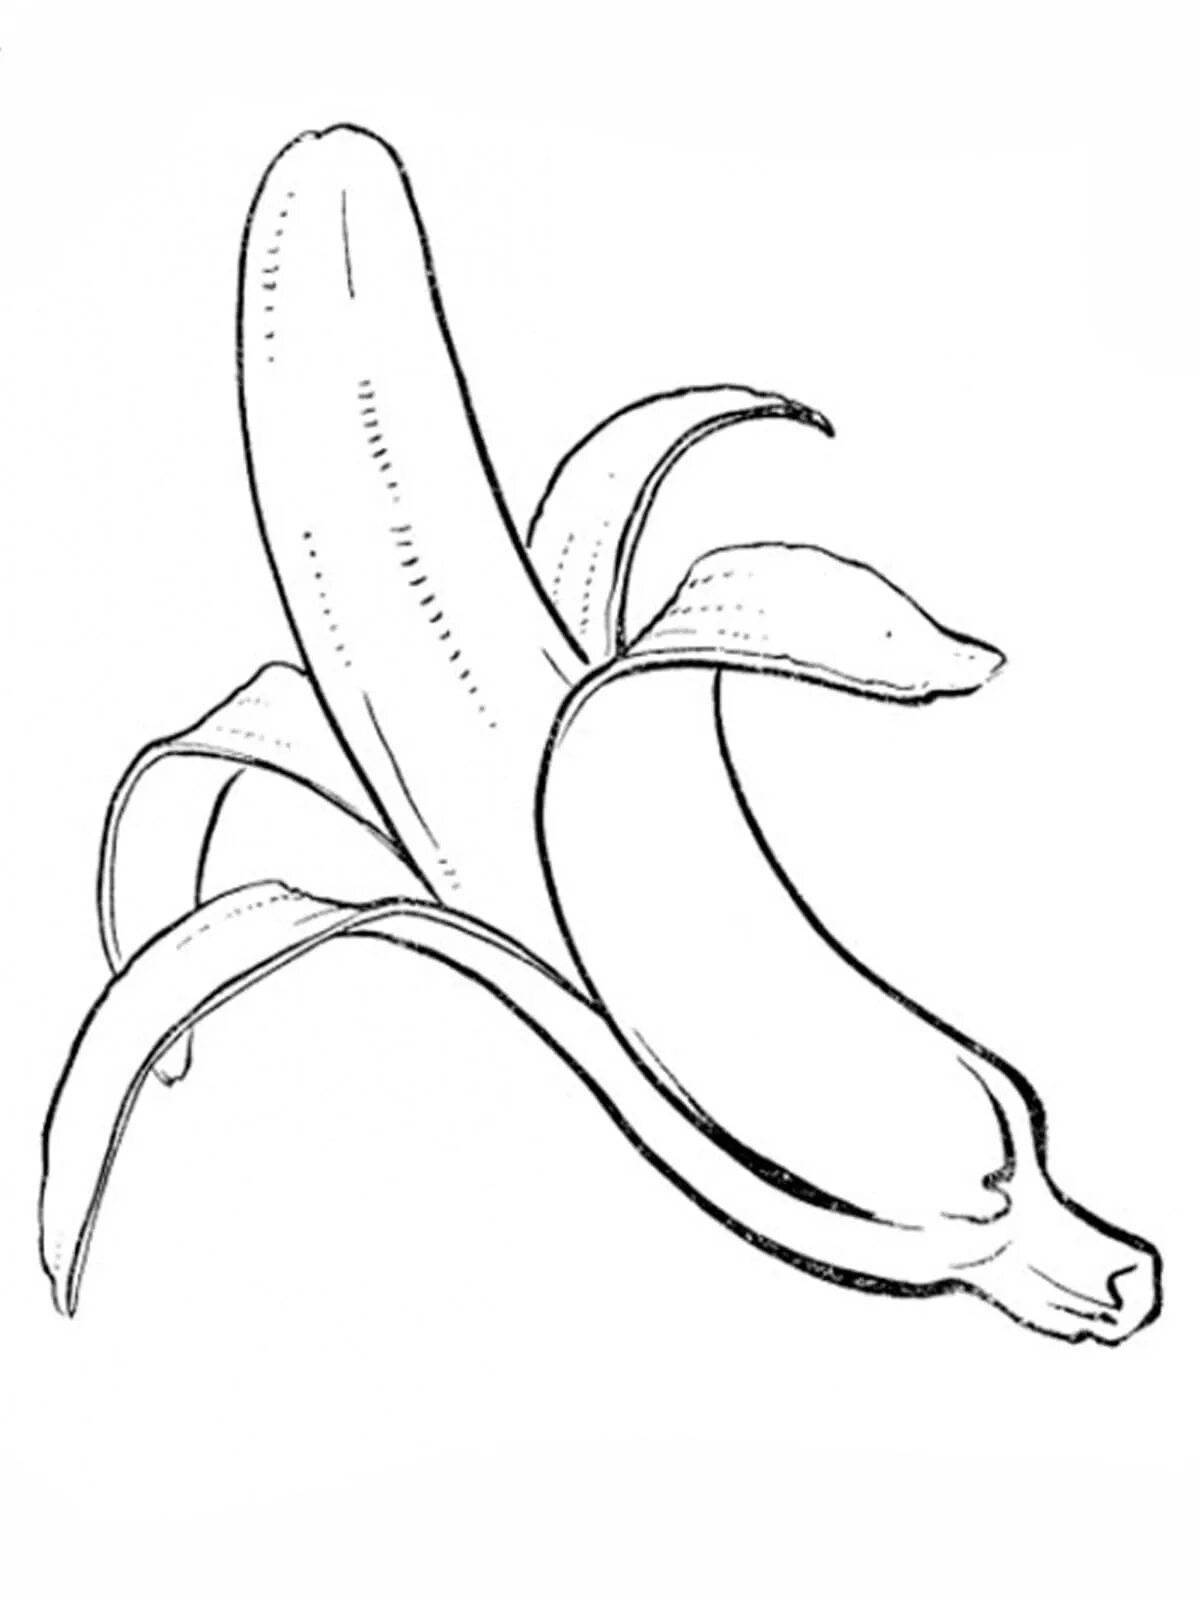 Banana drawing